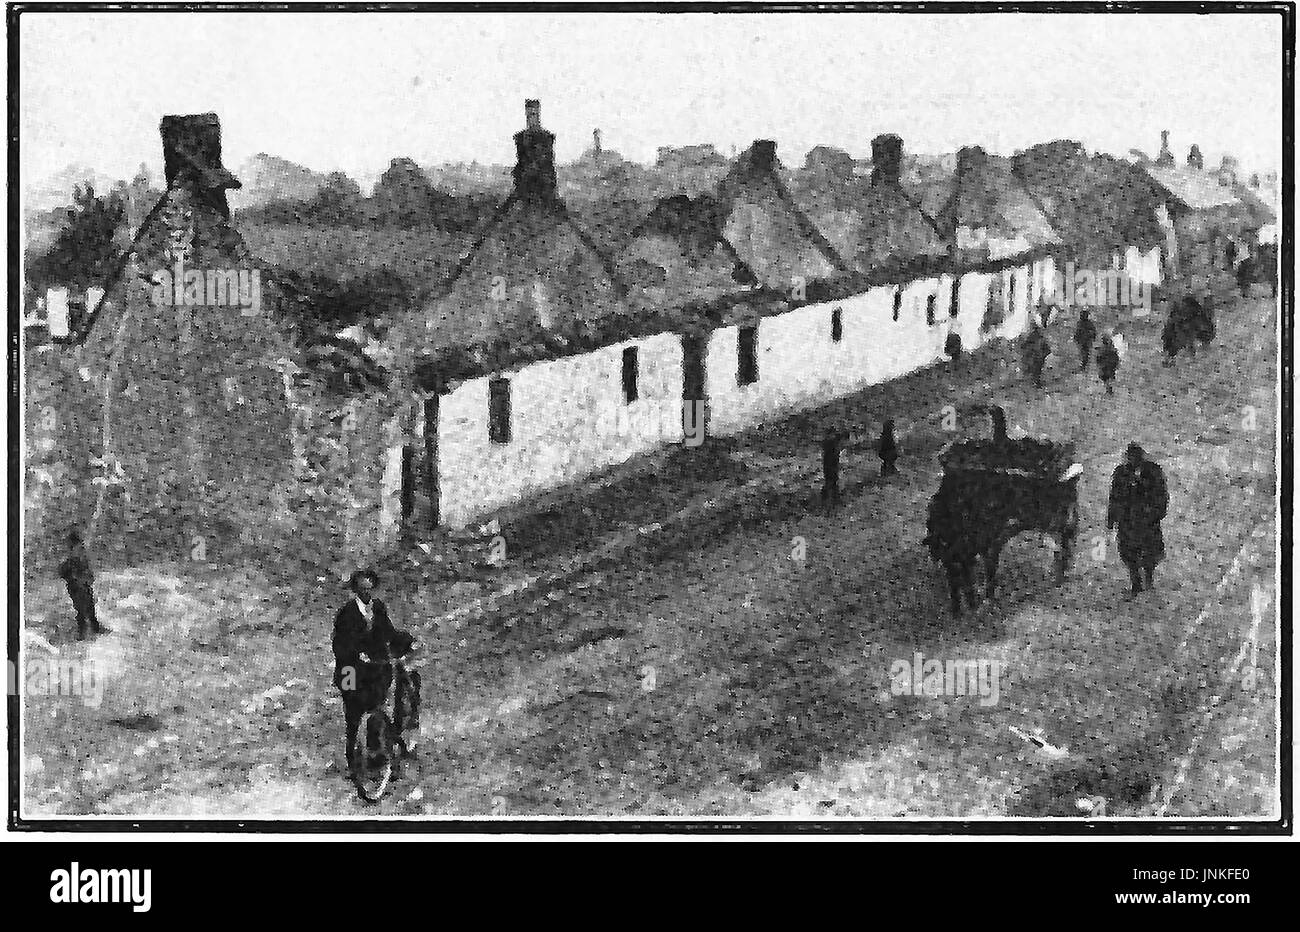 Problemas de Irlanda - Evacuación de viviendas dañadas en Balbriggan, Irlanda en 1920, después del ataque de 'Negro y Tans' Foto de stock